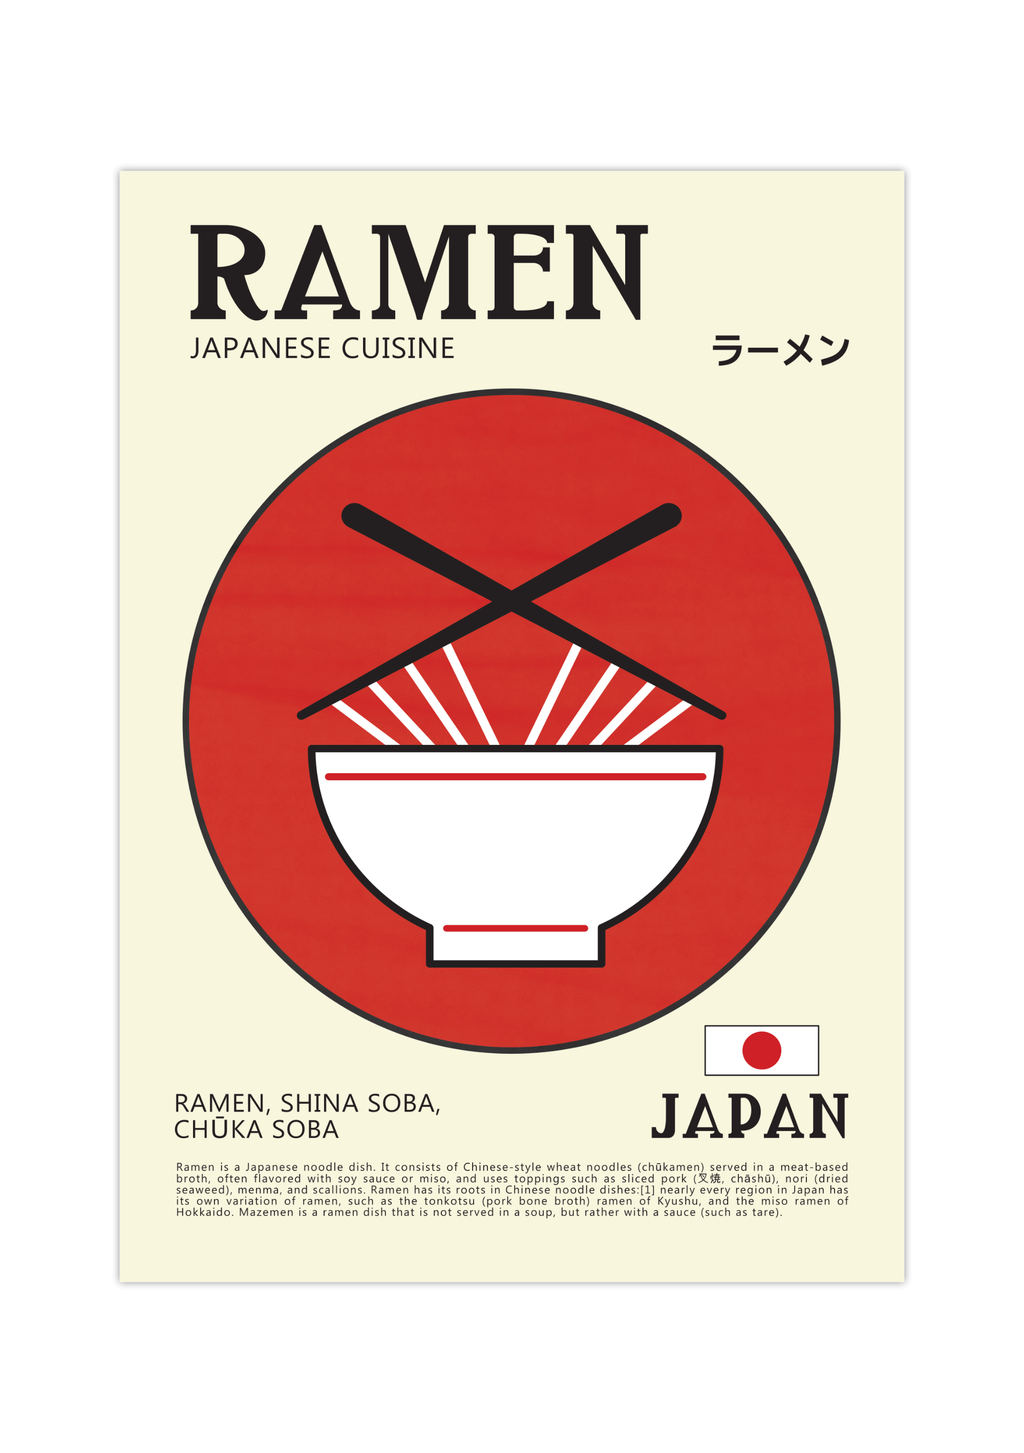 Dieses zeitgenössische Poster zeigt japanische Ramen-Nudeln, mit den Schriftzeichen für Ramen, der japanischen Flagge und eine kurze Erläuterung, was Ramen ist.